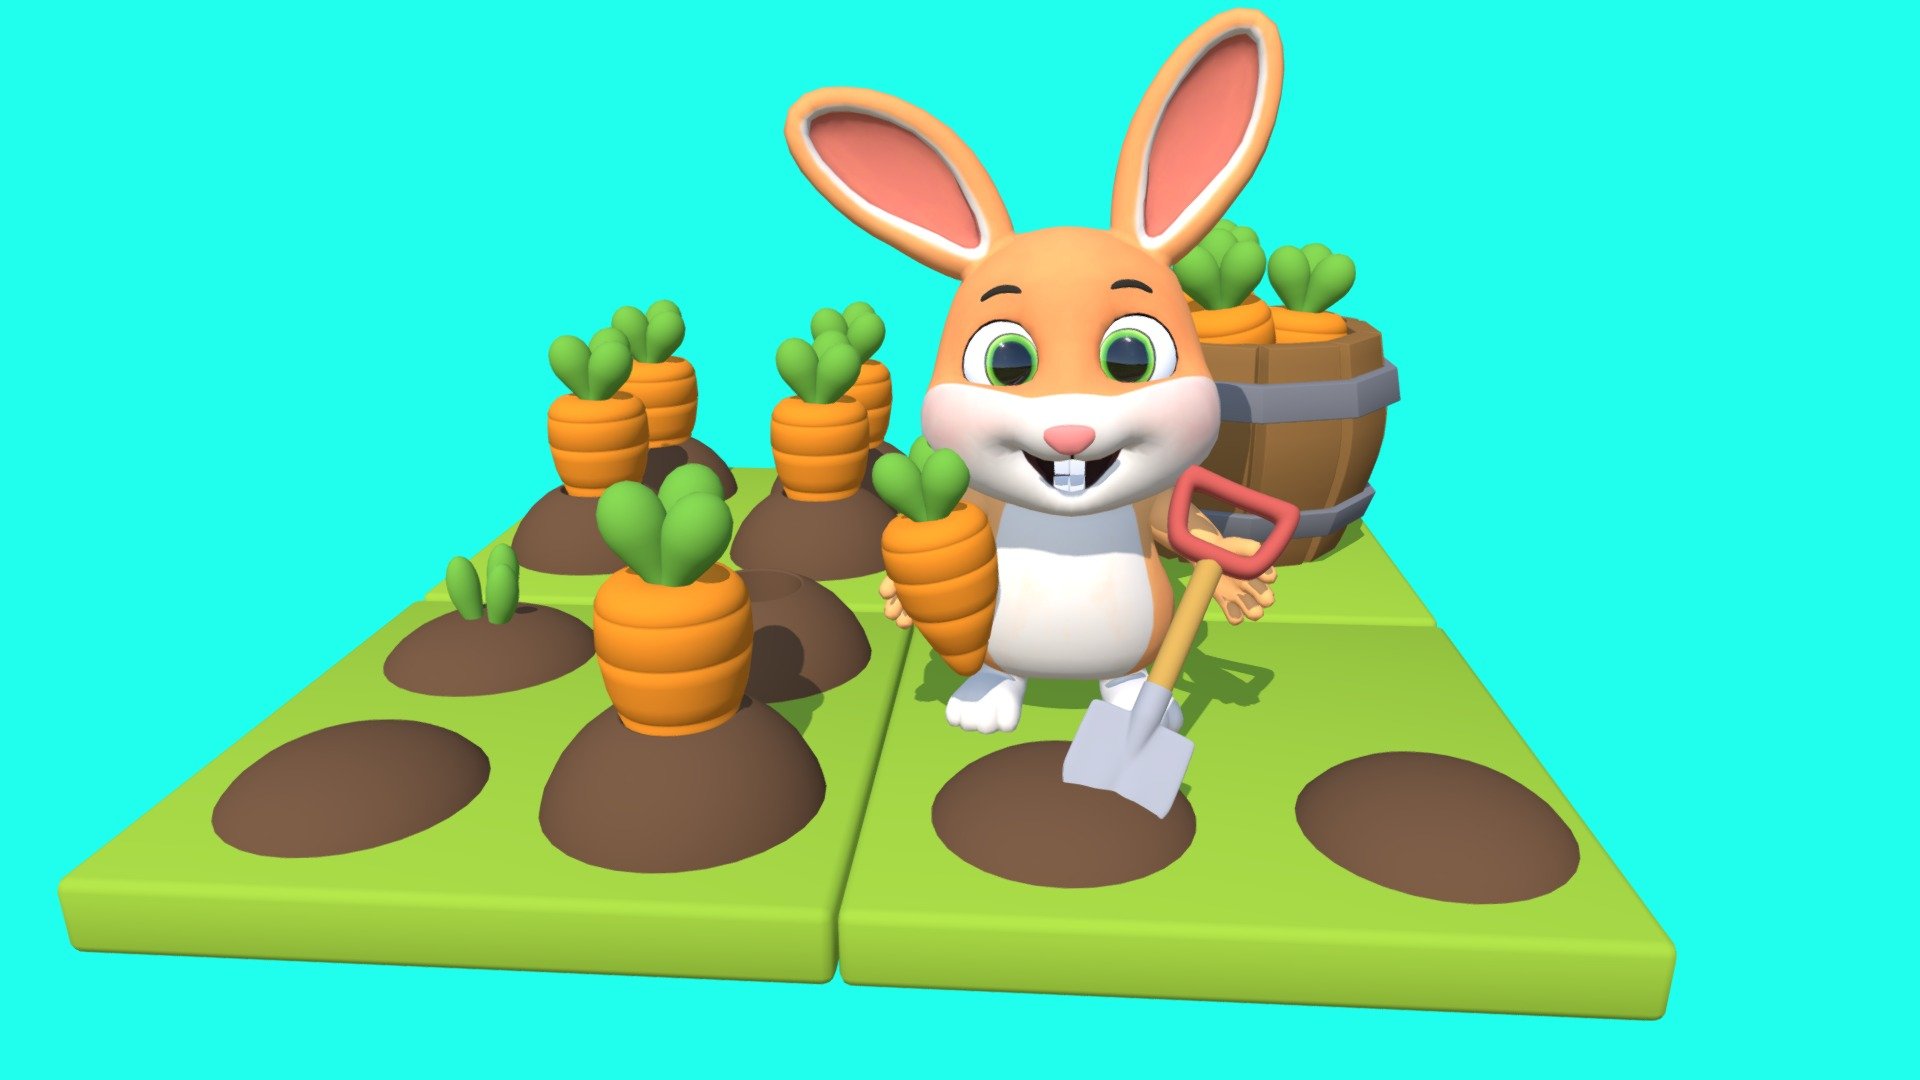 Stylized Rabbit in Carrot Farm.
The rabbit enjoys heavesting carrots!!!
Love eating carrots!!! - Cute Cartoon Style Rabbit  (Rigged) - Buy Royalty Free 3D model by Juliette(PurpleFox) (@JulietteArt) 3d model